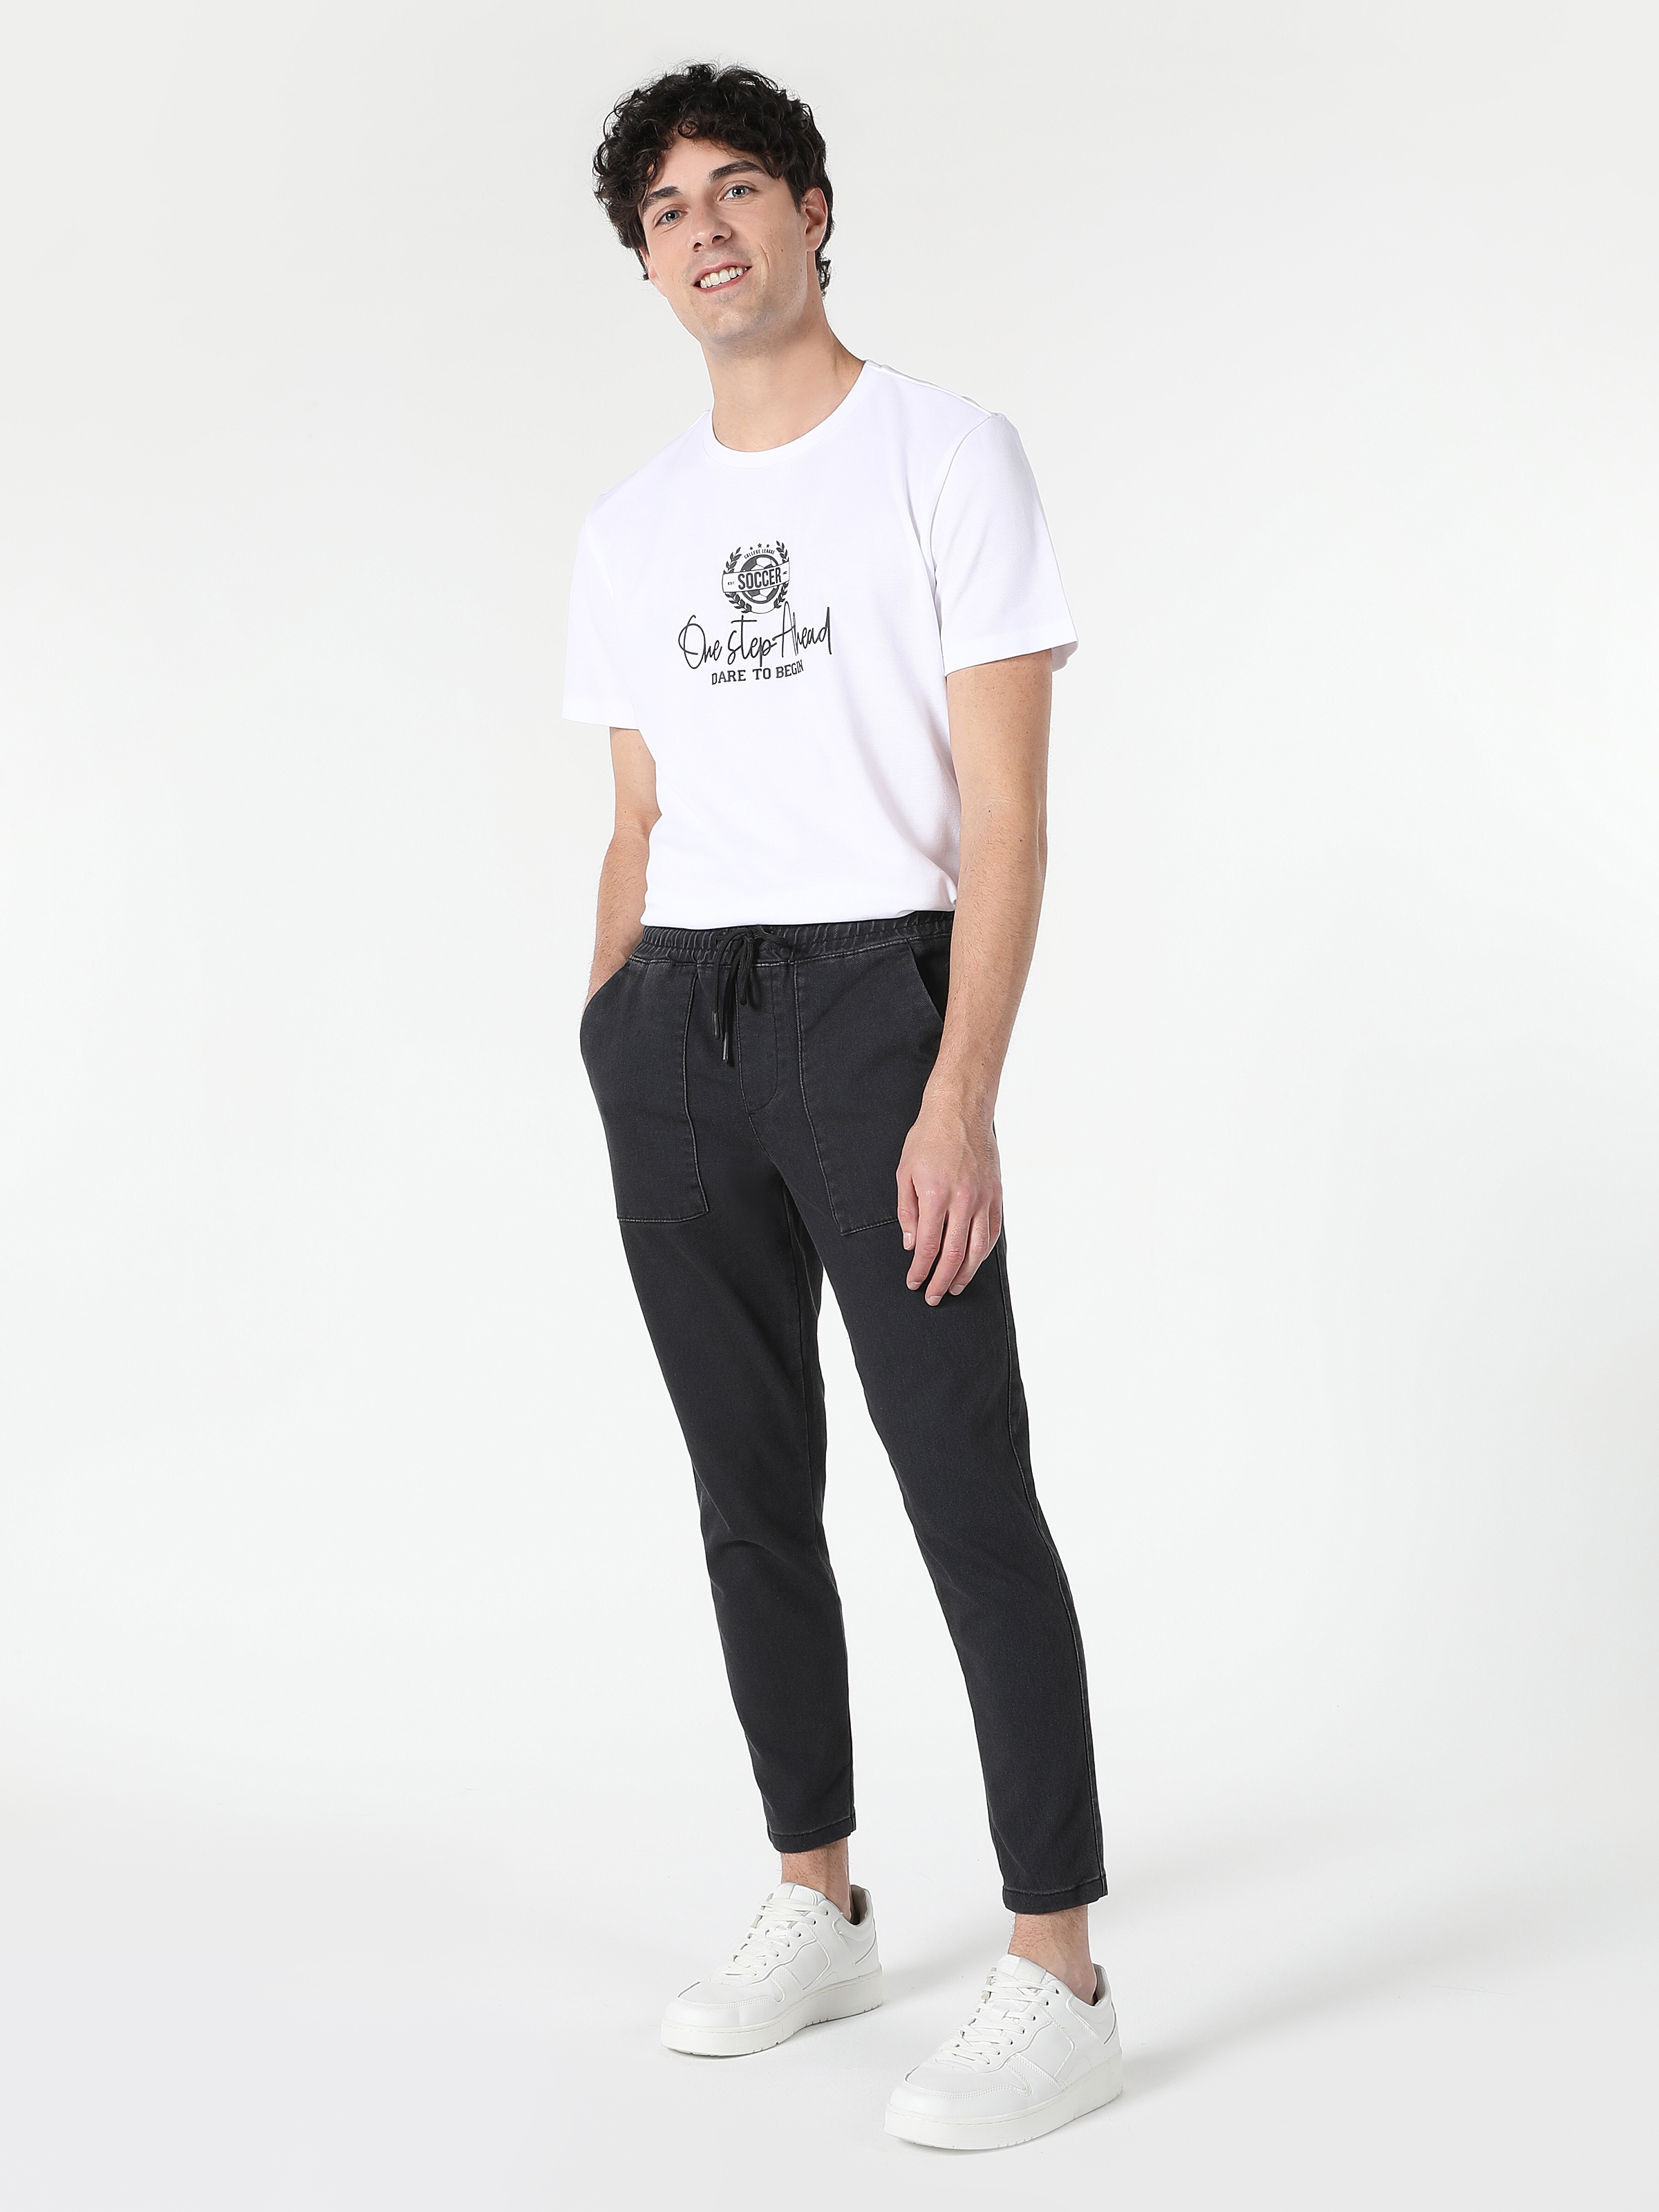 Afficher les détails de Pantalon Homme Taille Moyenne Coupe Slim Coupe Droite Anthracite